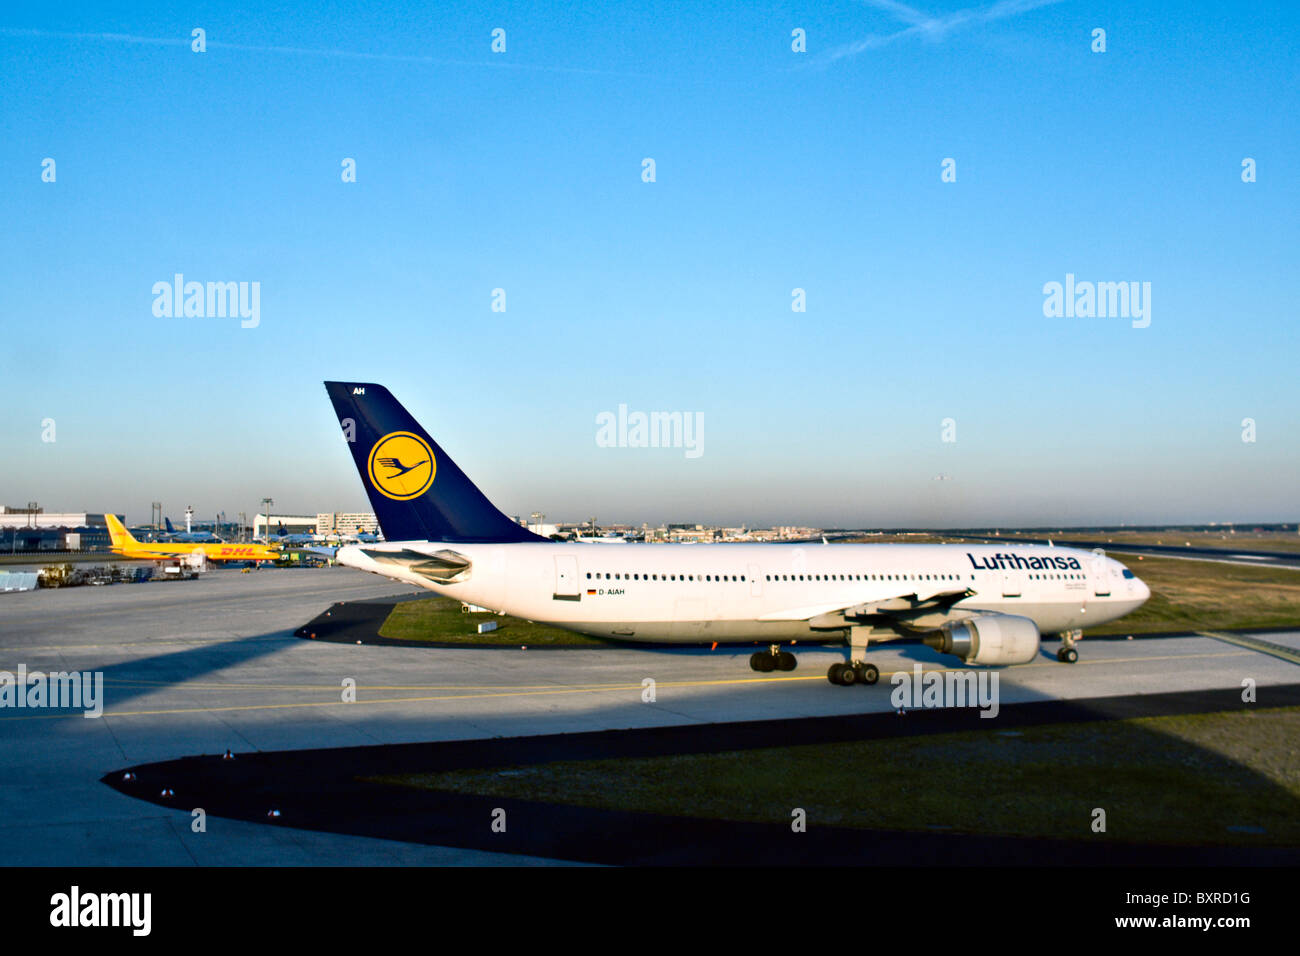 Francoforte, Germania: Lufthansa jet pronti a decollare da Francoforte Aeroporto Internazionale o Francoforte am Main in Germania. Foto Stock